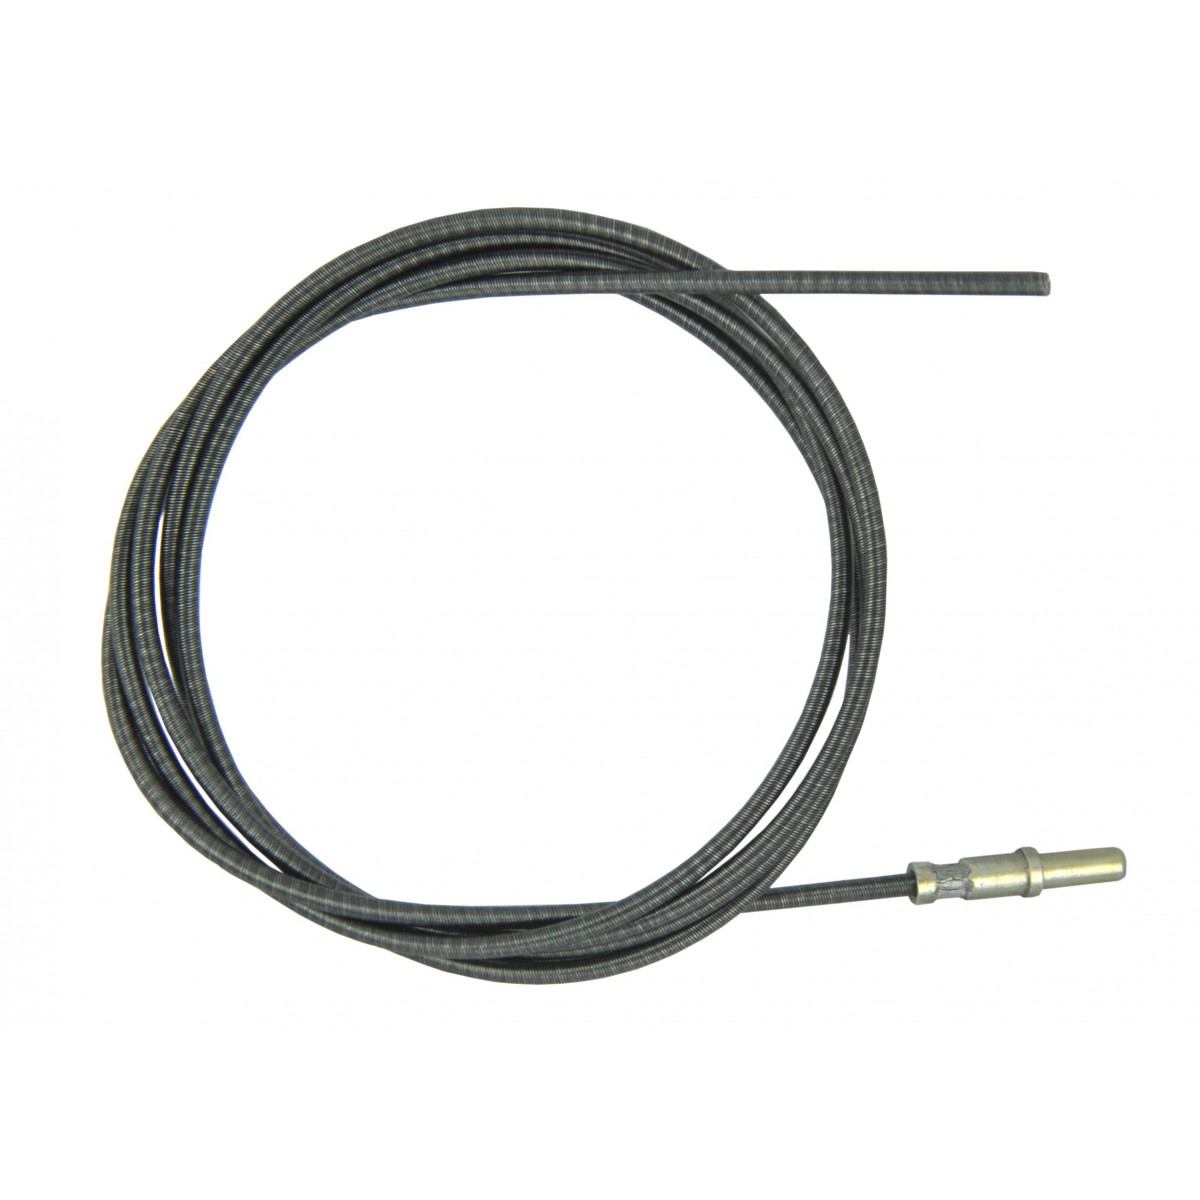 Cable de tacómetro de 2000 mm Tacómetro Iseki sin armadura, inserto de cable